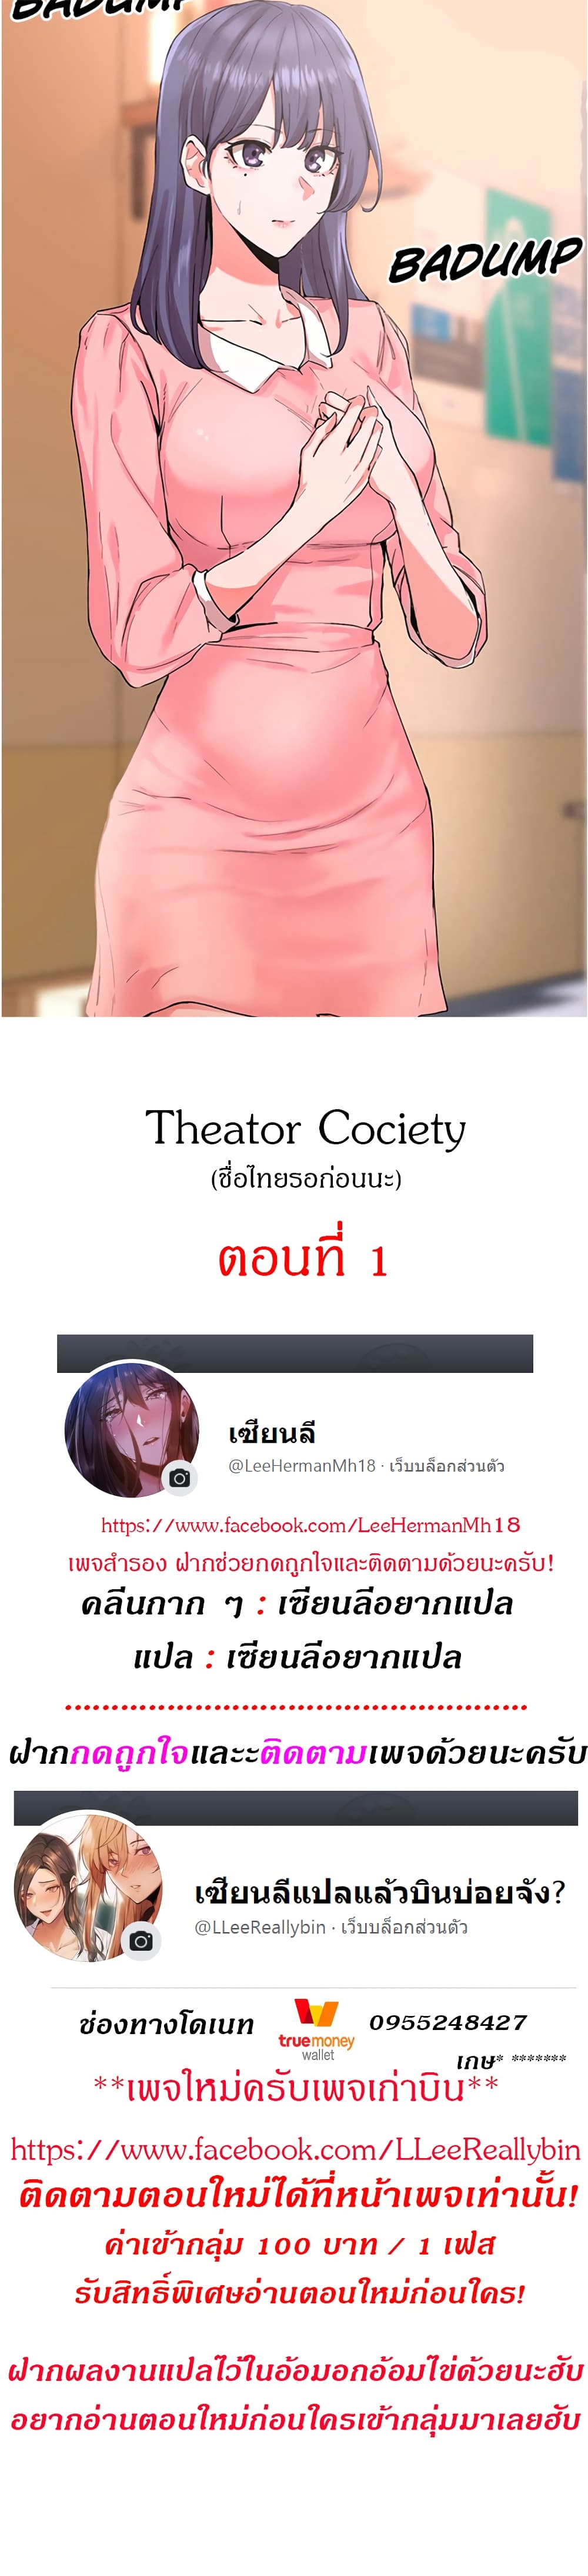 Theater Society